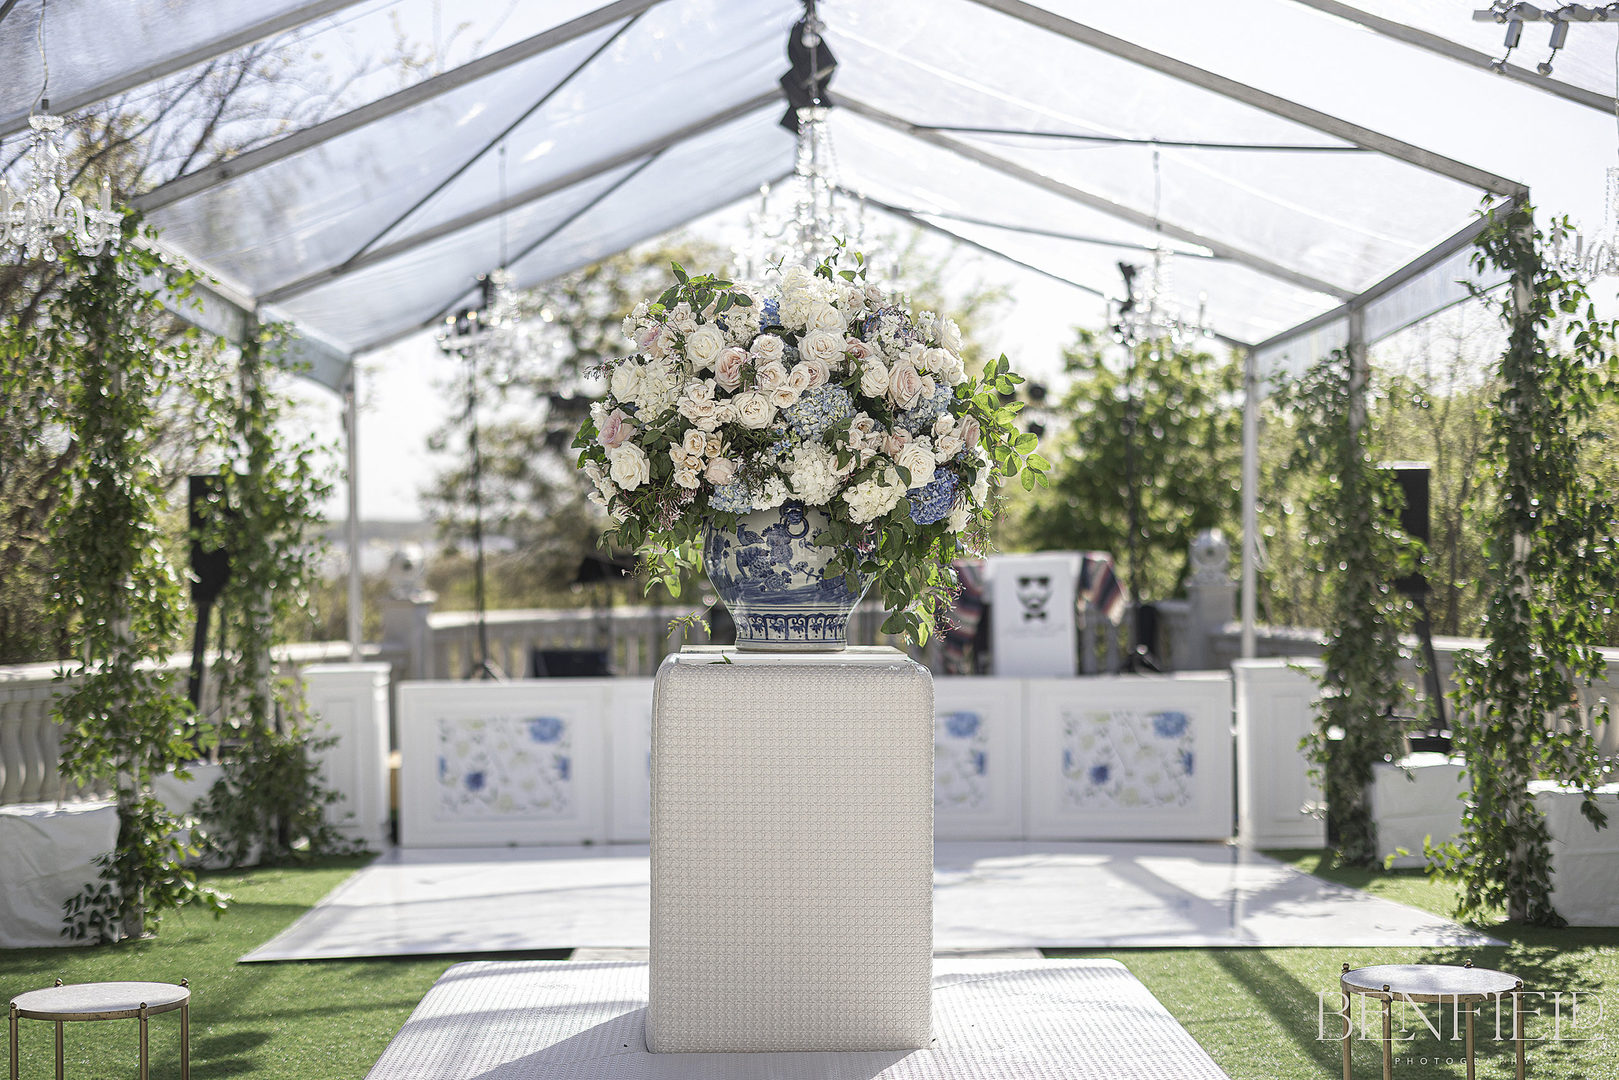 Huge floral arrangement under clear tent at wedding reception at Hillside Estate